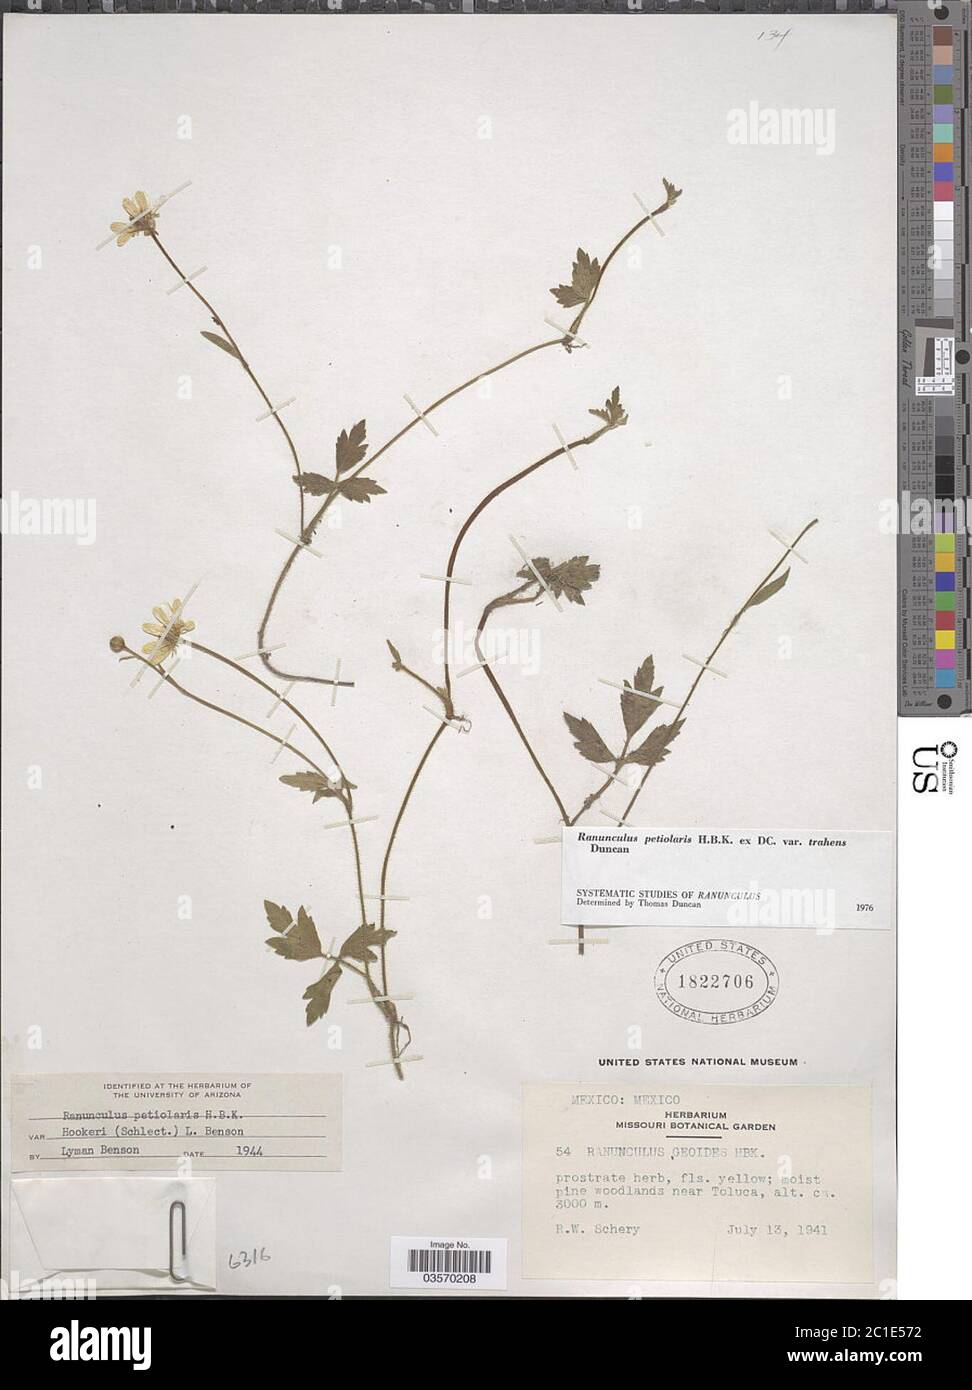 Ranunculus petiolaris var trahens Kunth ex DC Ranunculus petiolaris var trahens Kunth ex DC. Stock Photo